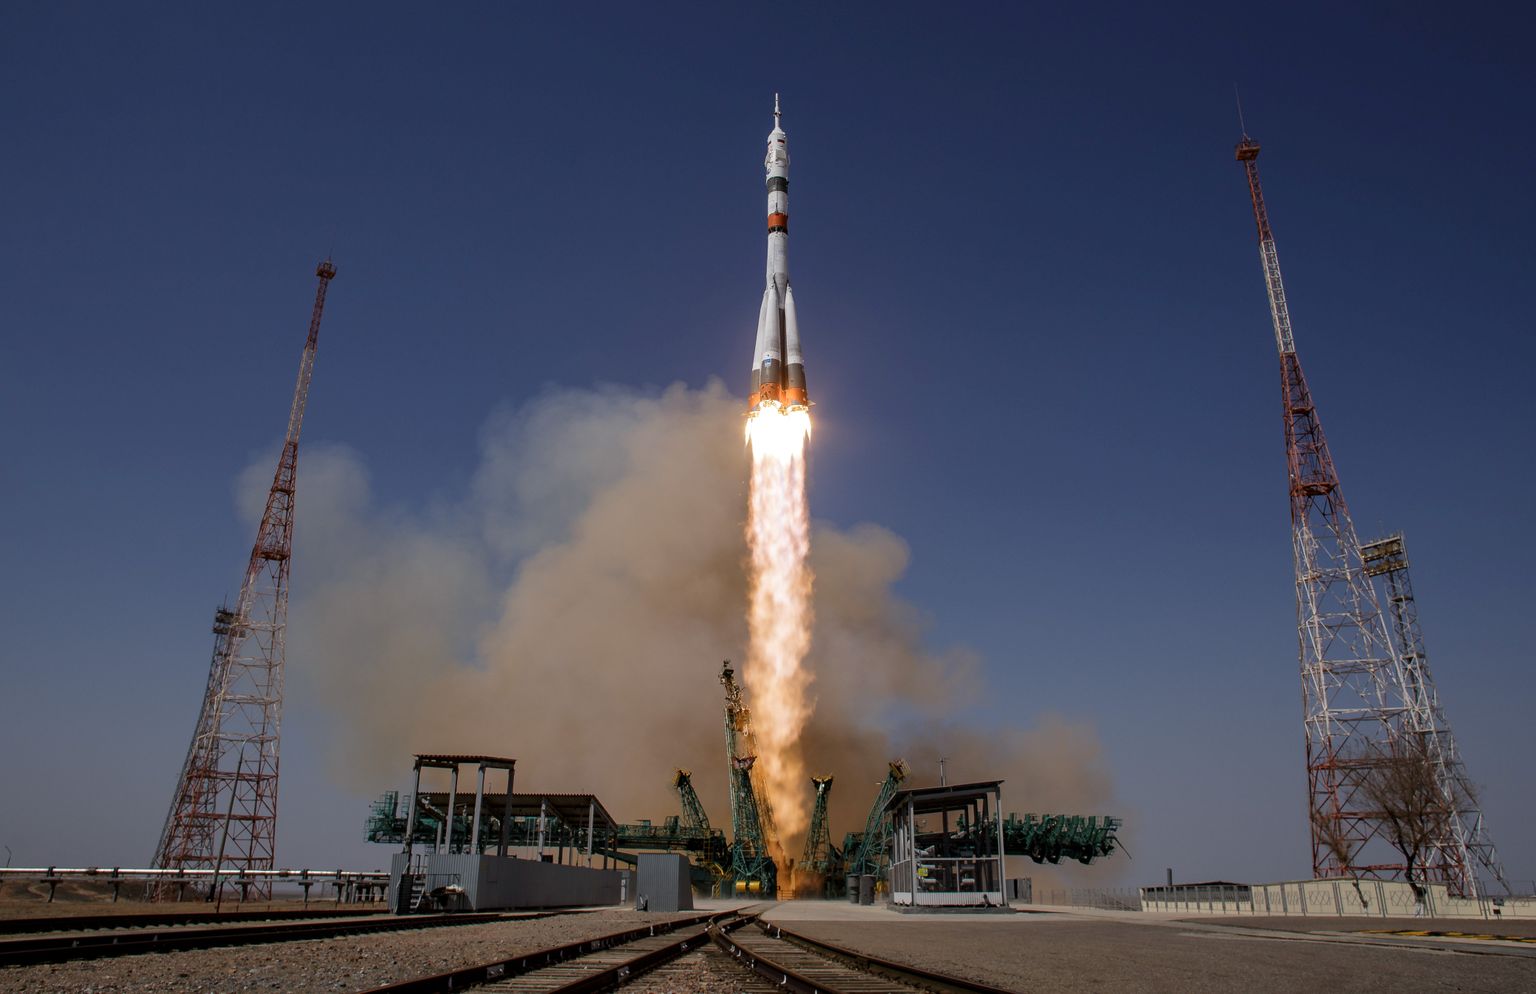 Venemaa Sojuz MS-18 rakett tõusmas 9. aprillil 2021 õhku Kasahstanist Baikonuri kosmodroomilt. Pardal olid ISS-i 65. ekspeditsiooni liikmed: USA astronaut Mark Vande Hei ning Venemaa kosmonaudid Pjotr Dubrov ja Oleg Novitski